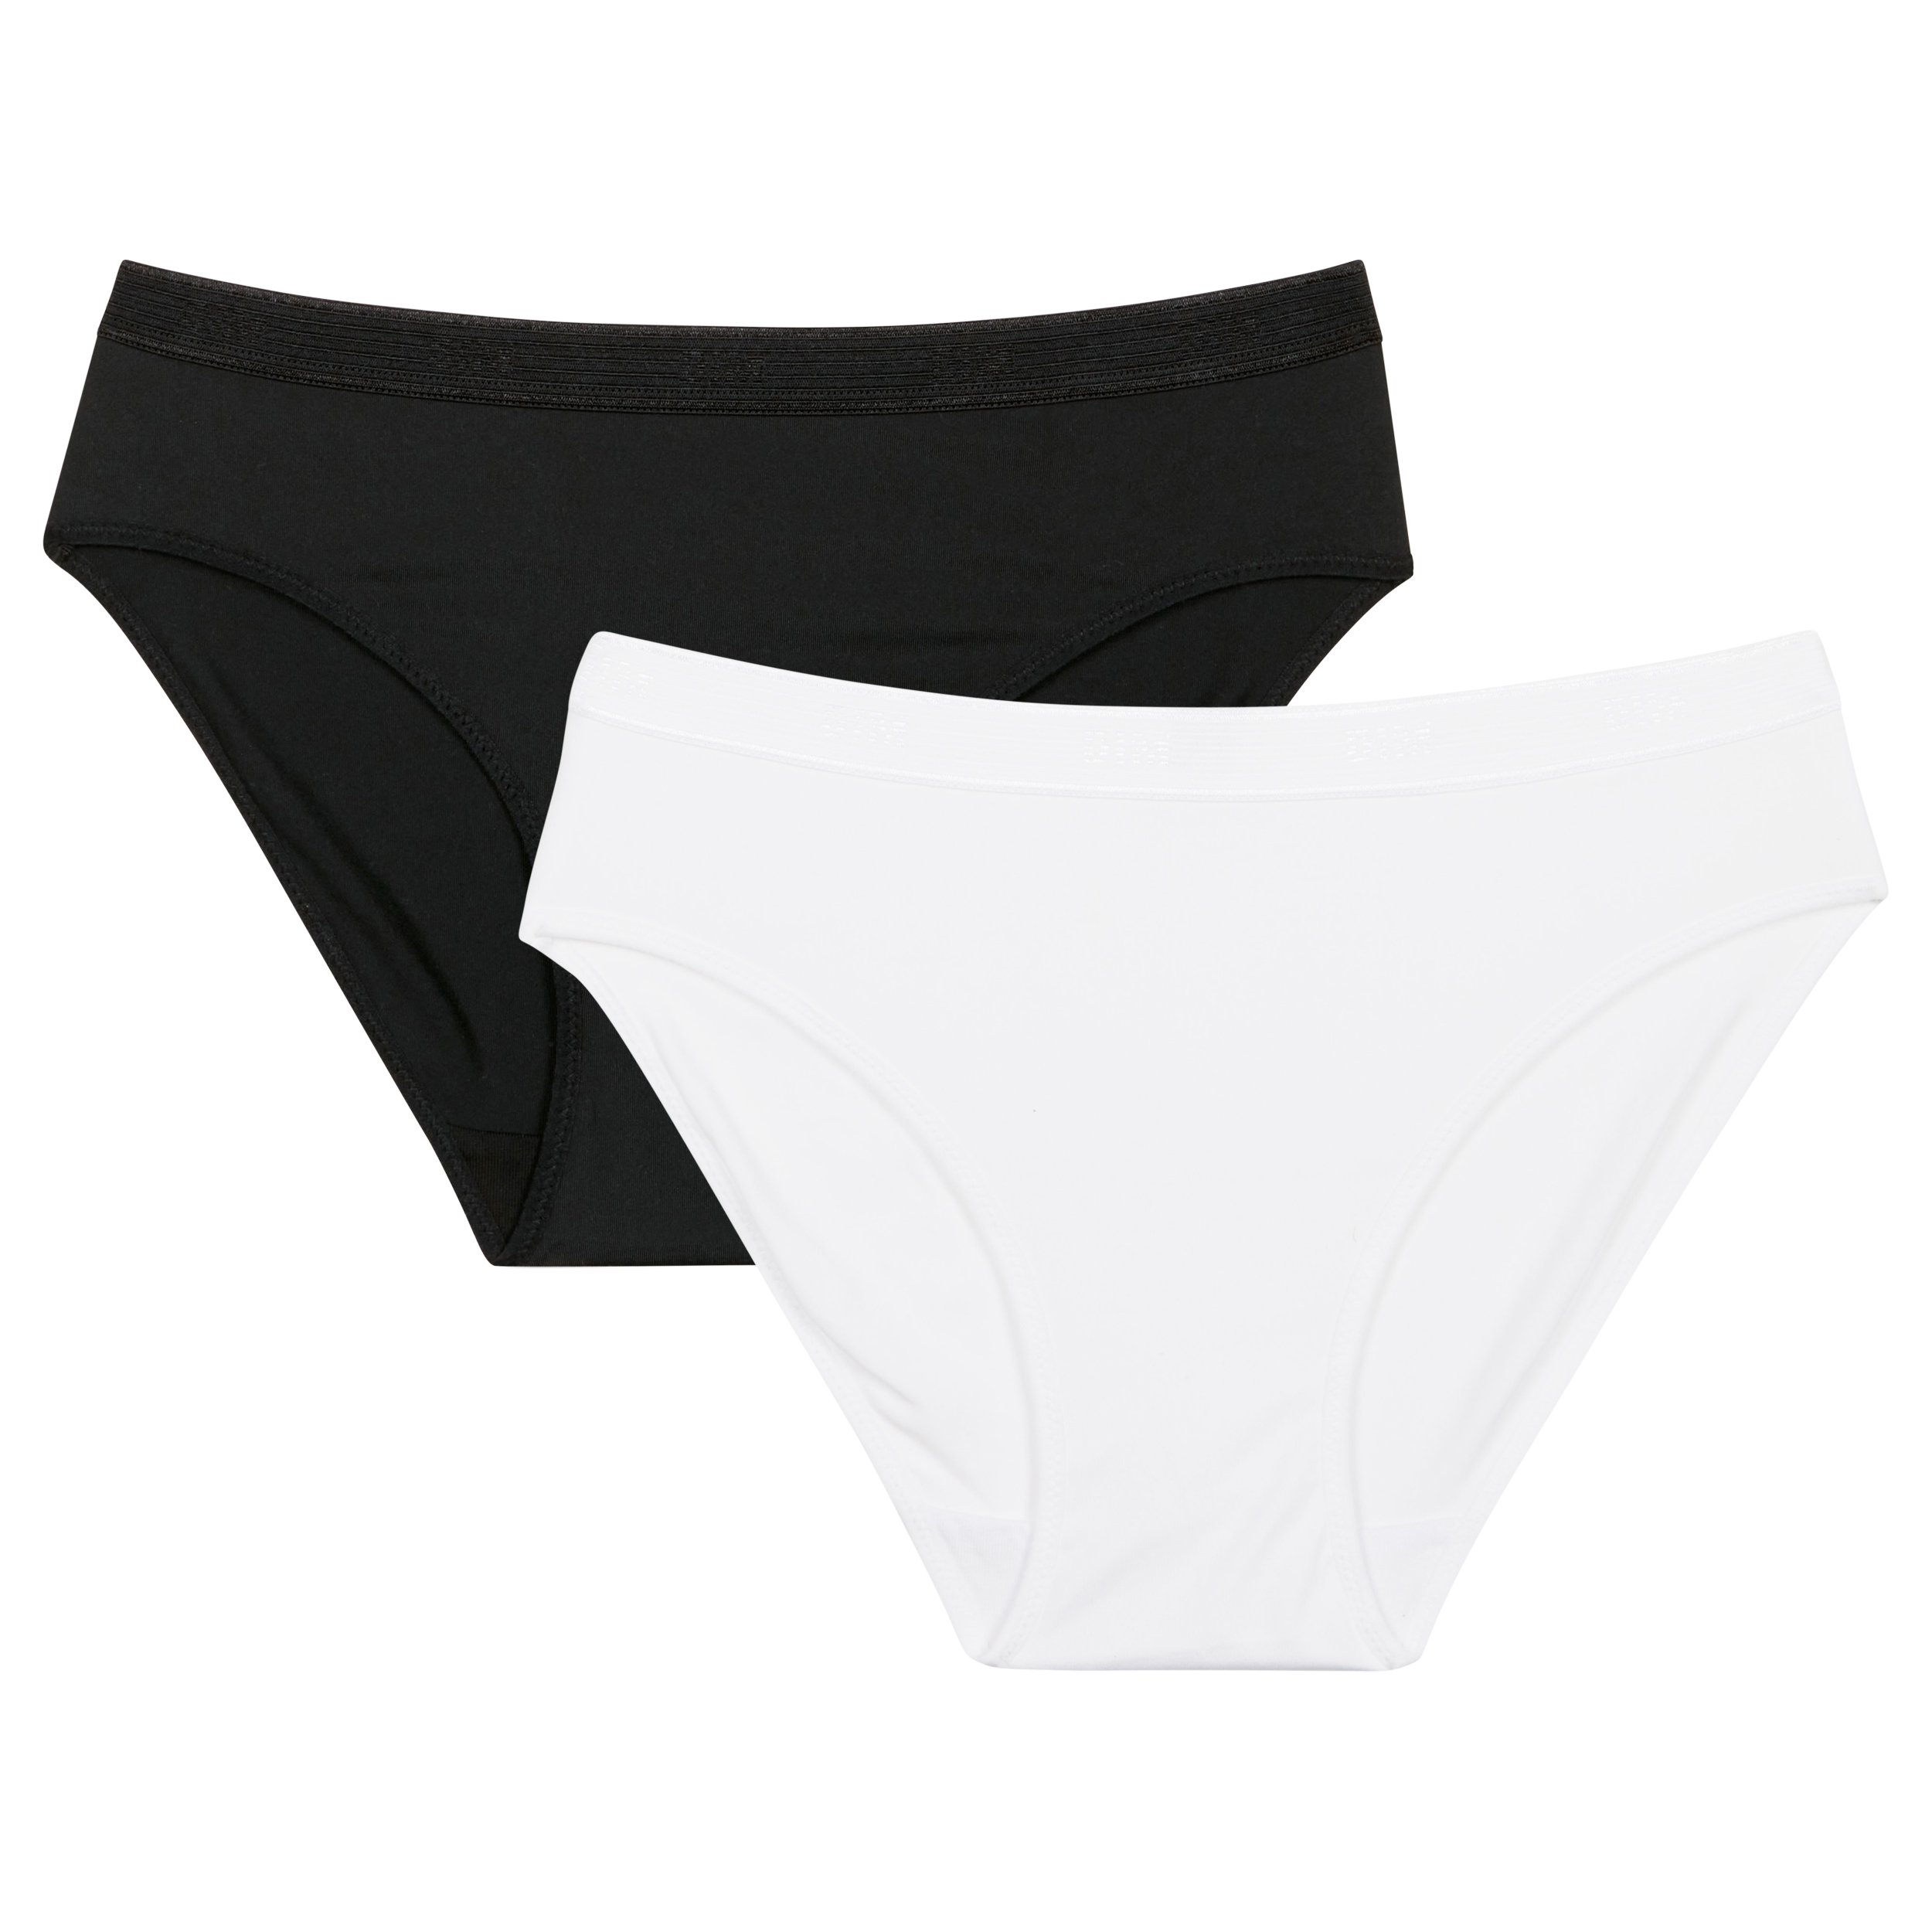 Girls $25 - $50 White Underwear.